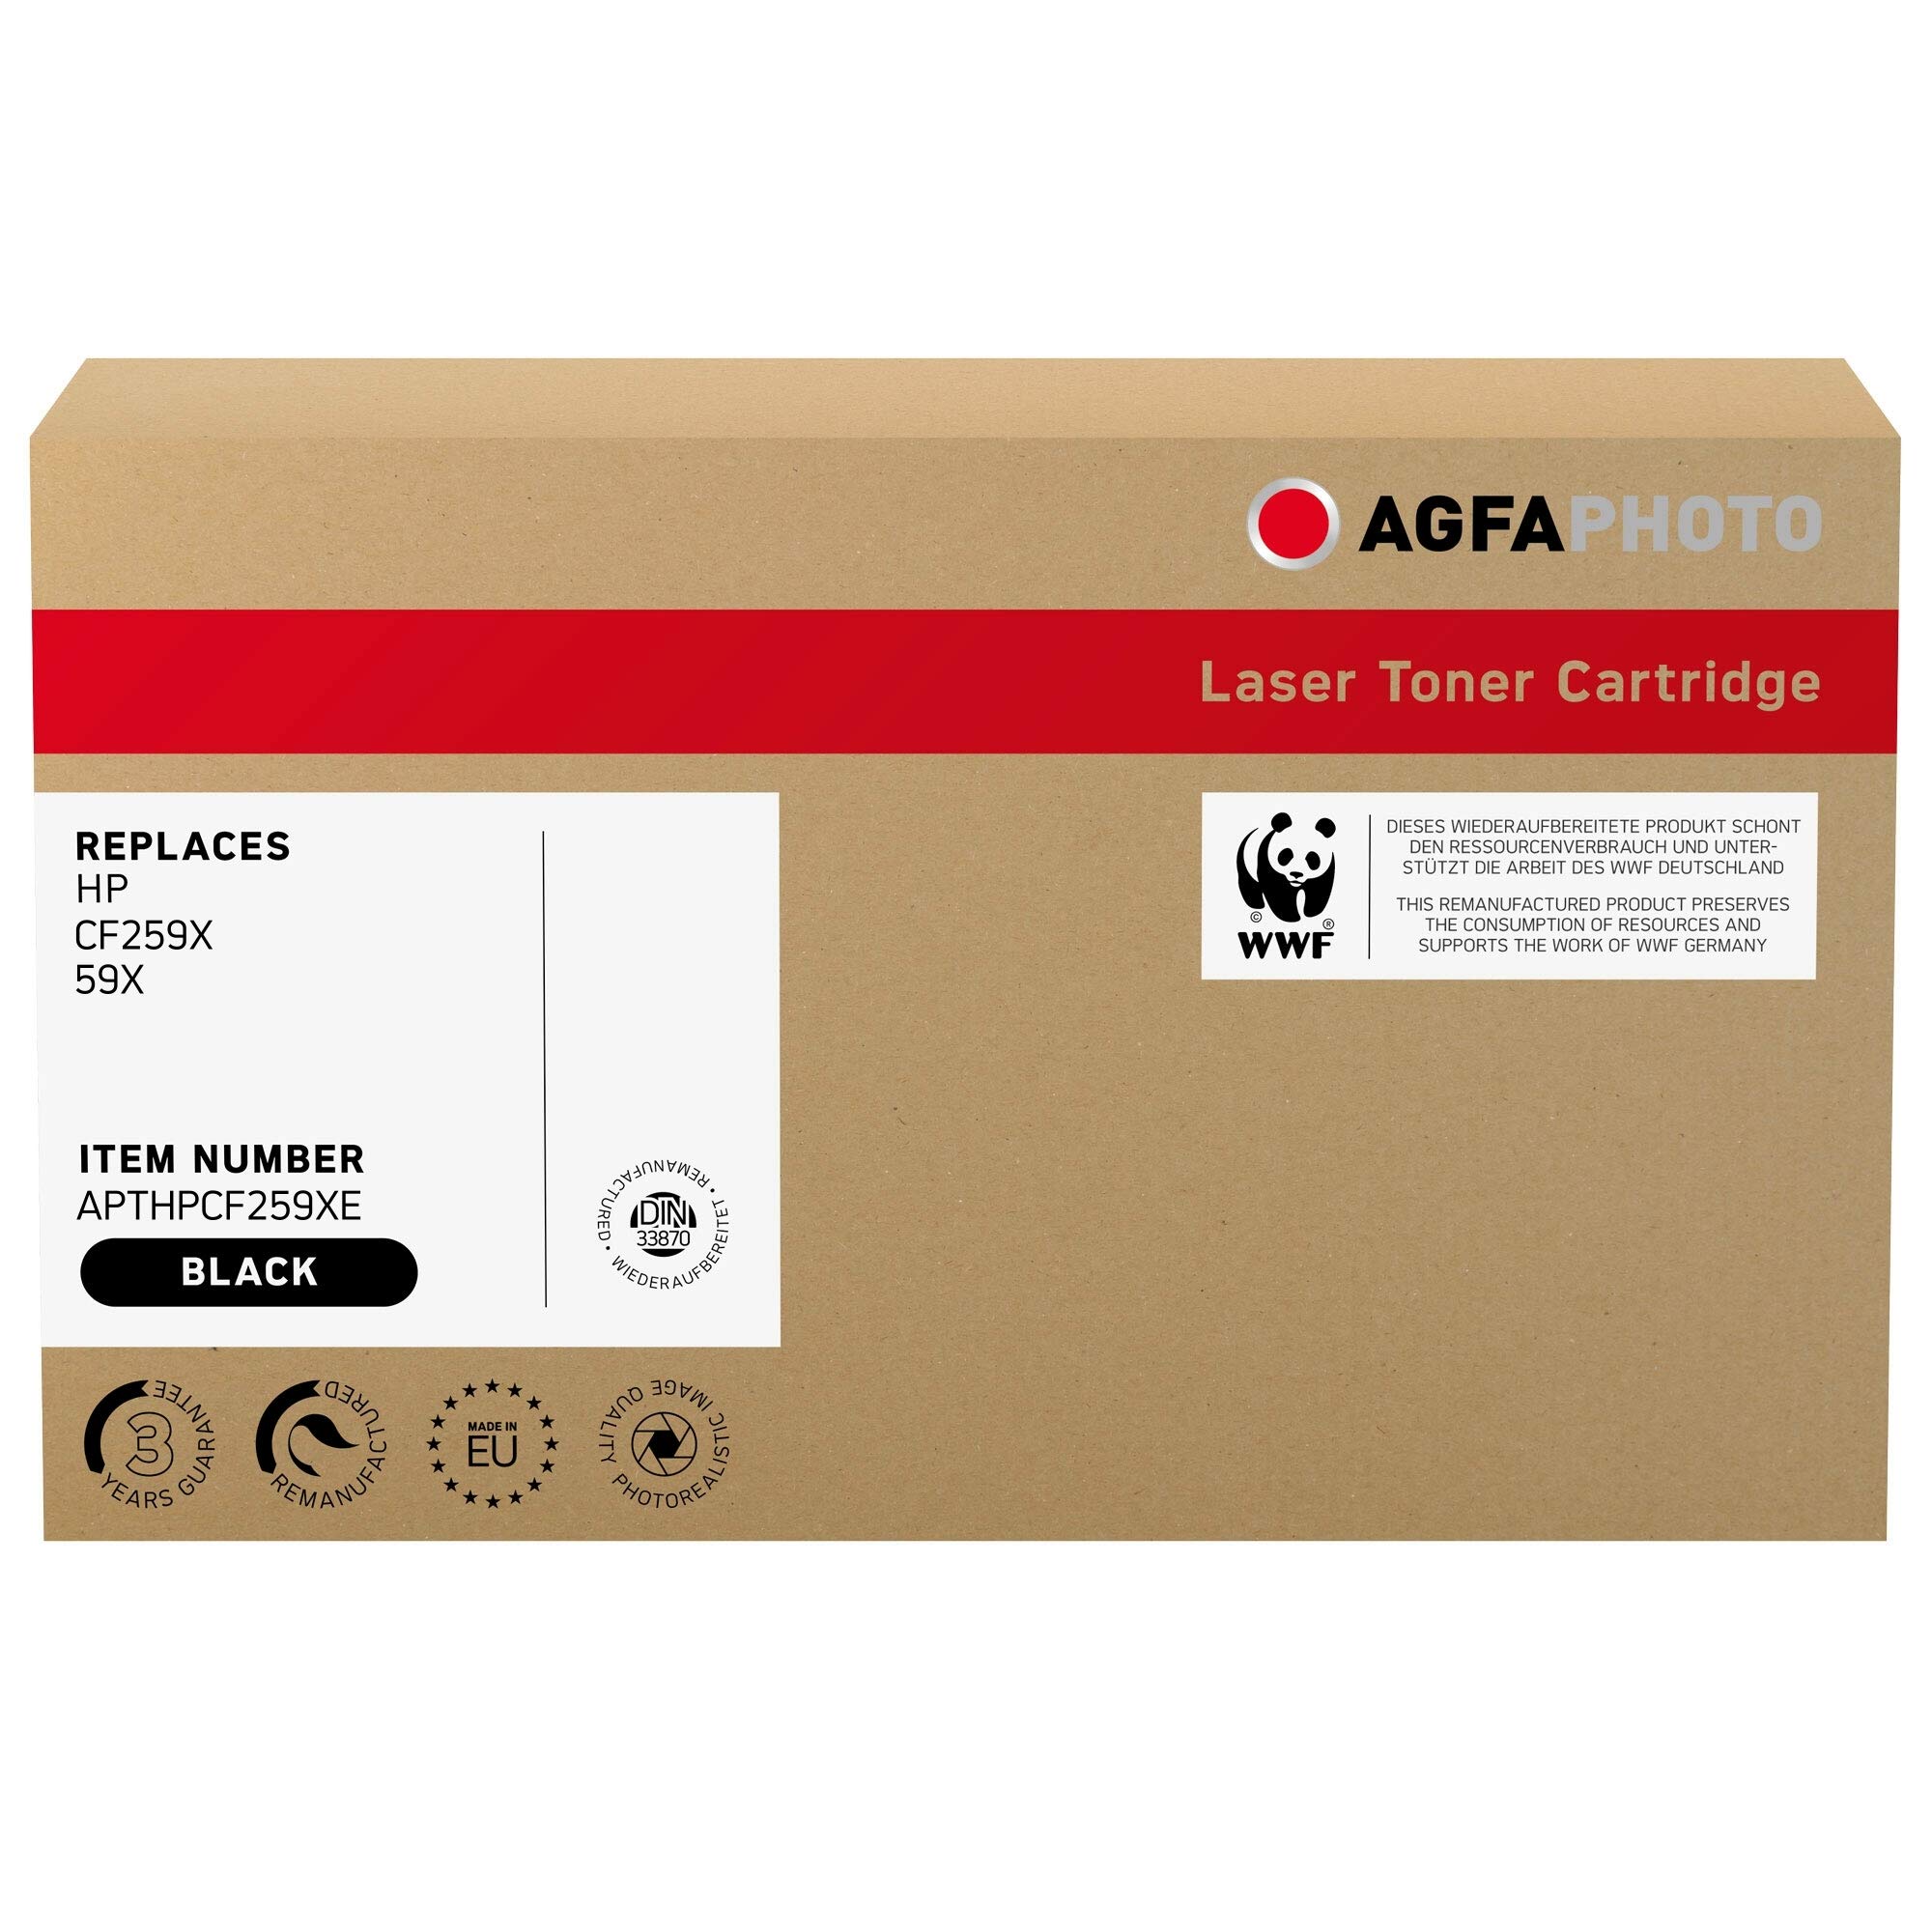 AgfaPhoto Laser Toner ersetzt HP CF259X; 59X, 10000 Seiten, schwarz (für die Verwendung in HP LJ Pro M404X), 39 x 14 x 23.7